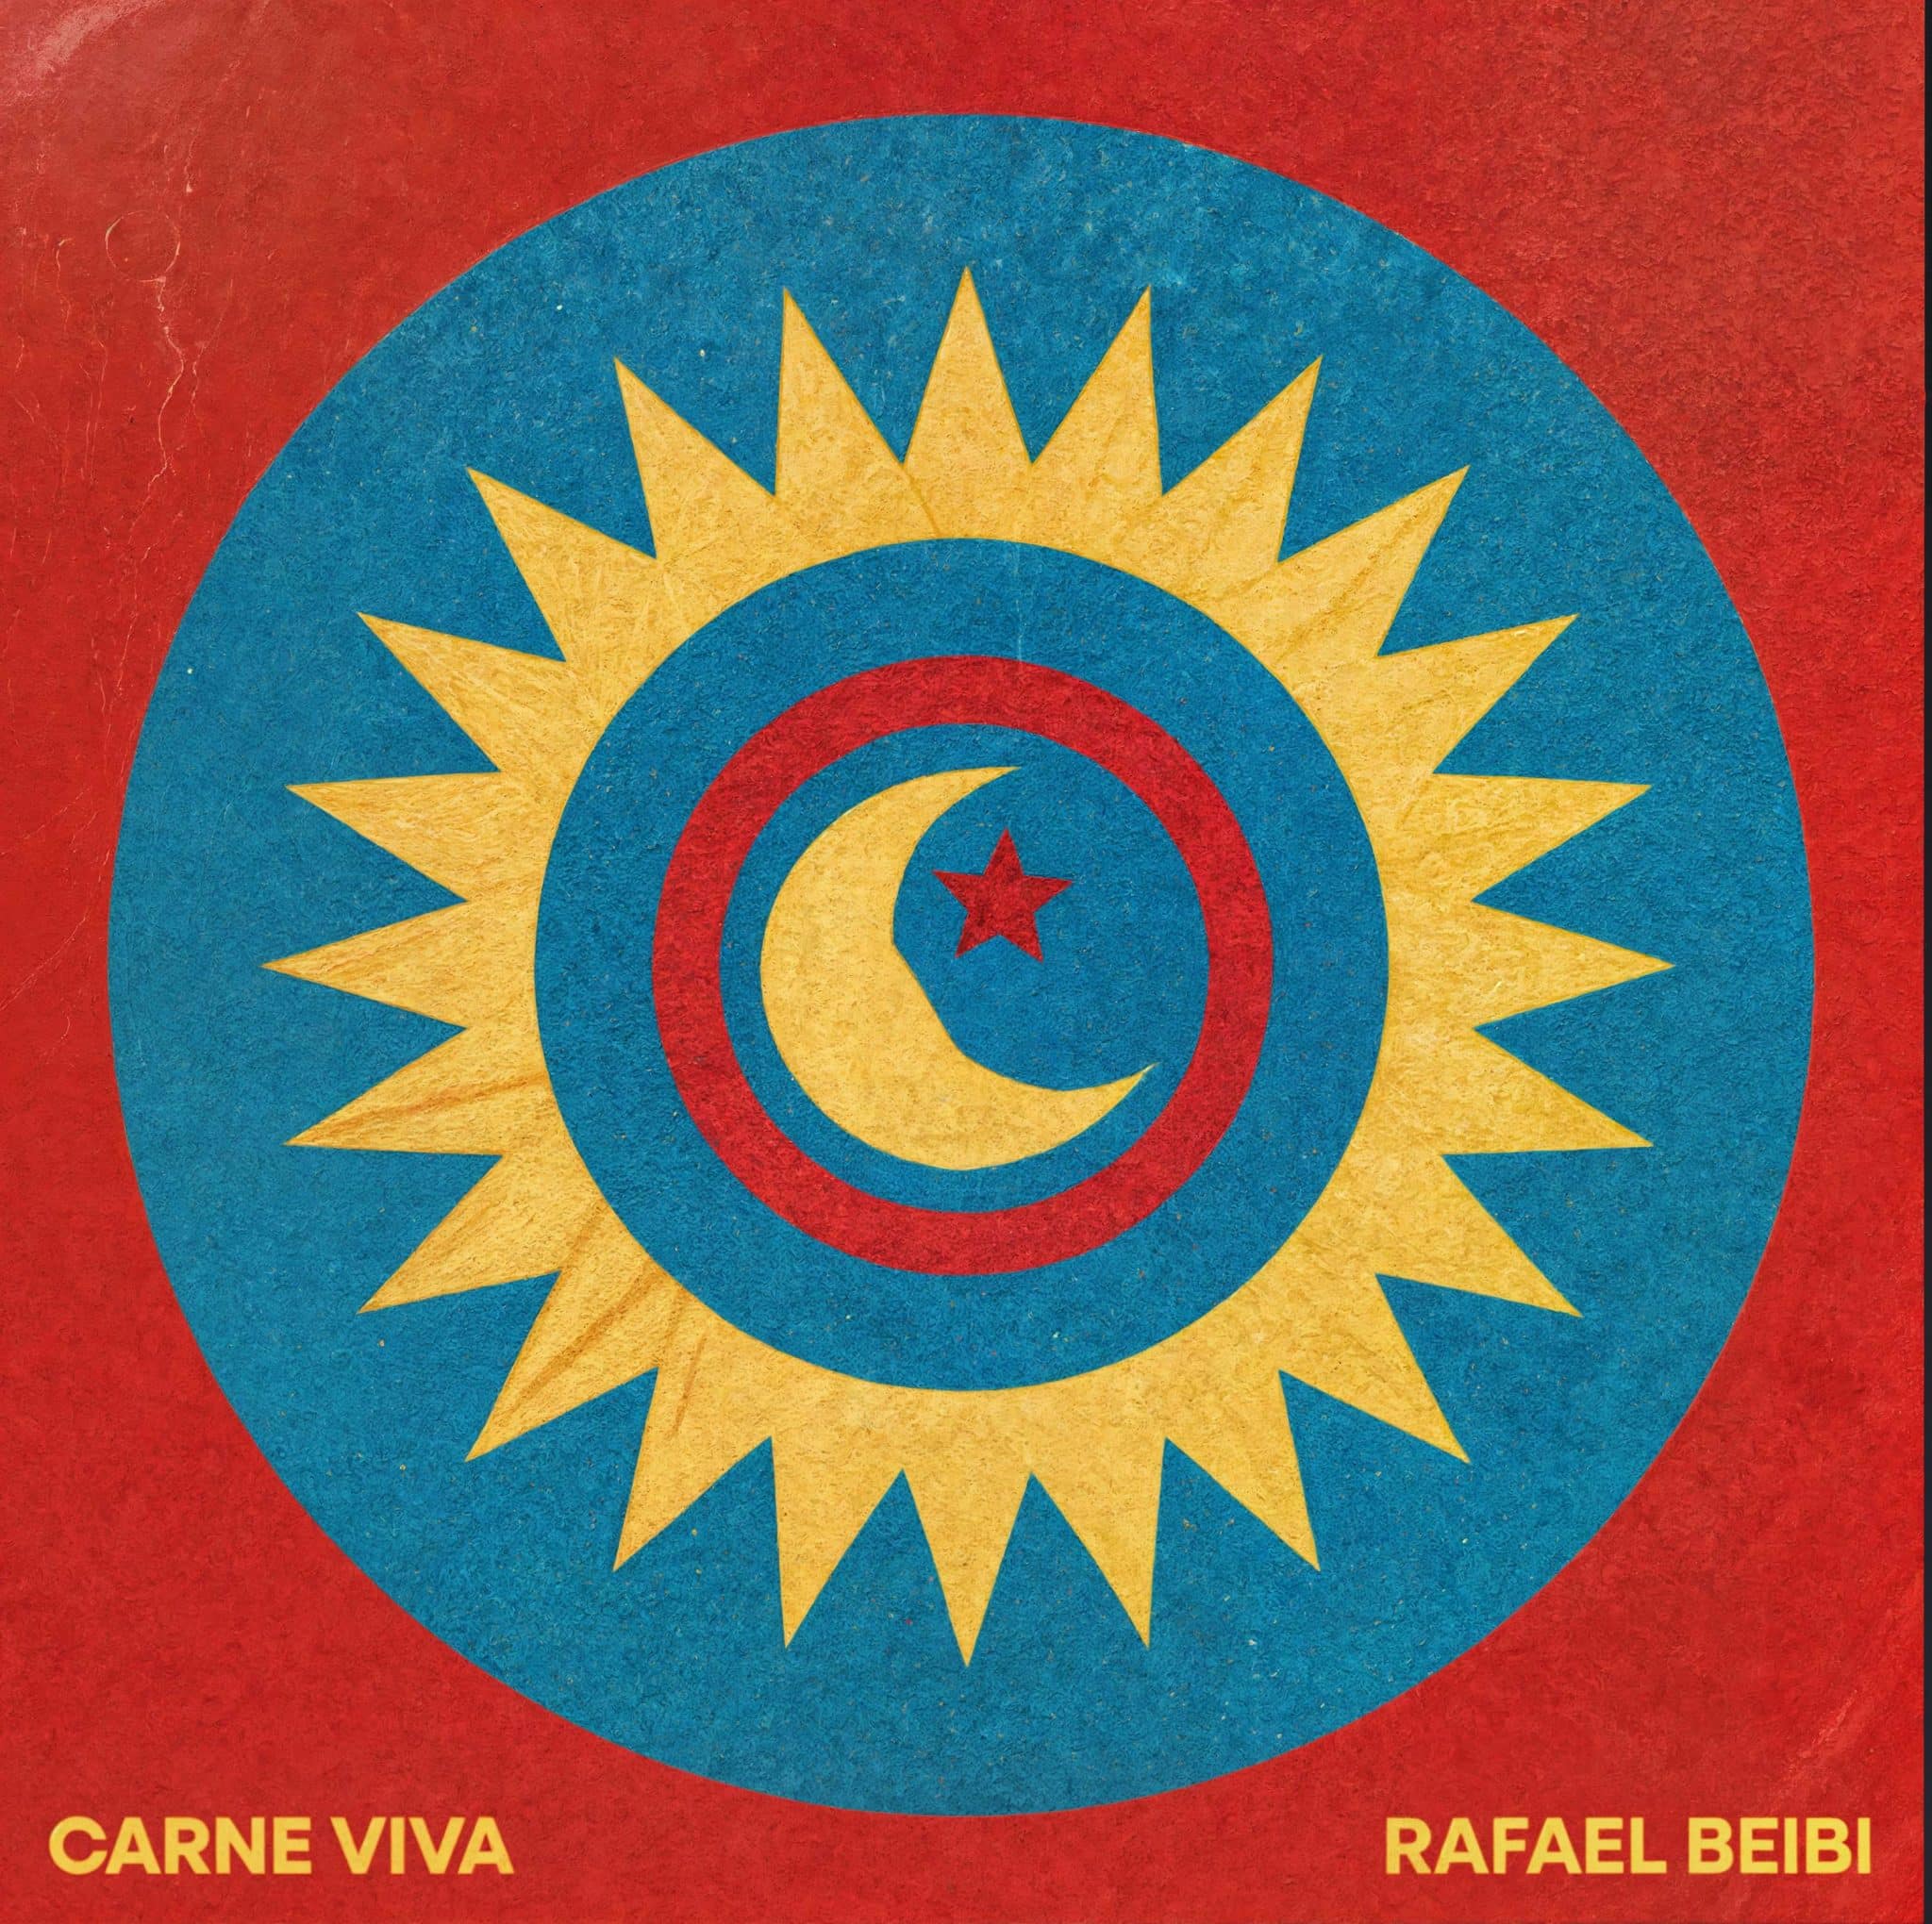 revistaprosaversoearte.com - Rafael Beibi lança single 'Carne Viva'